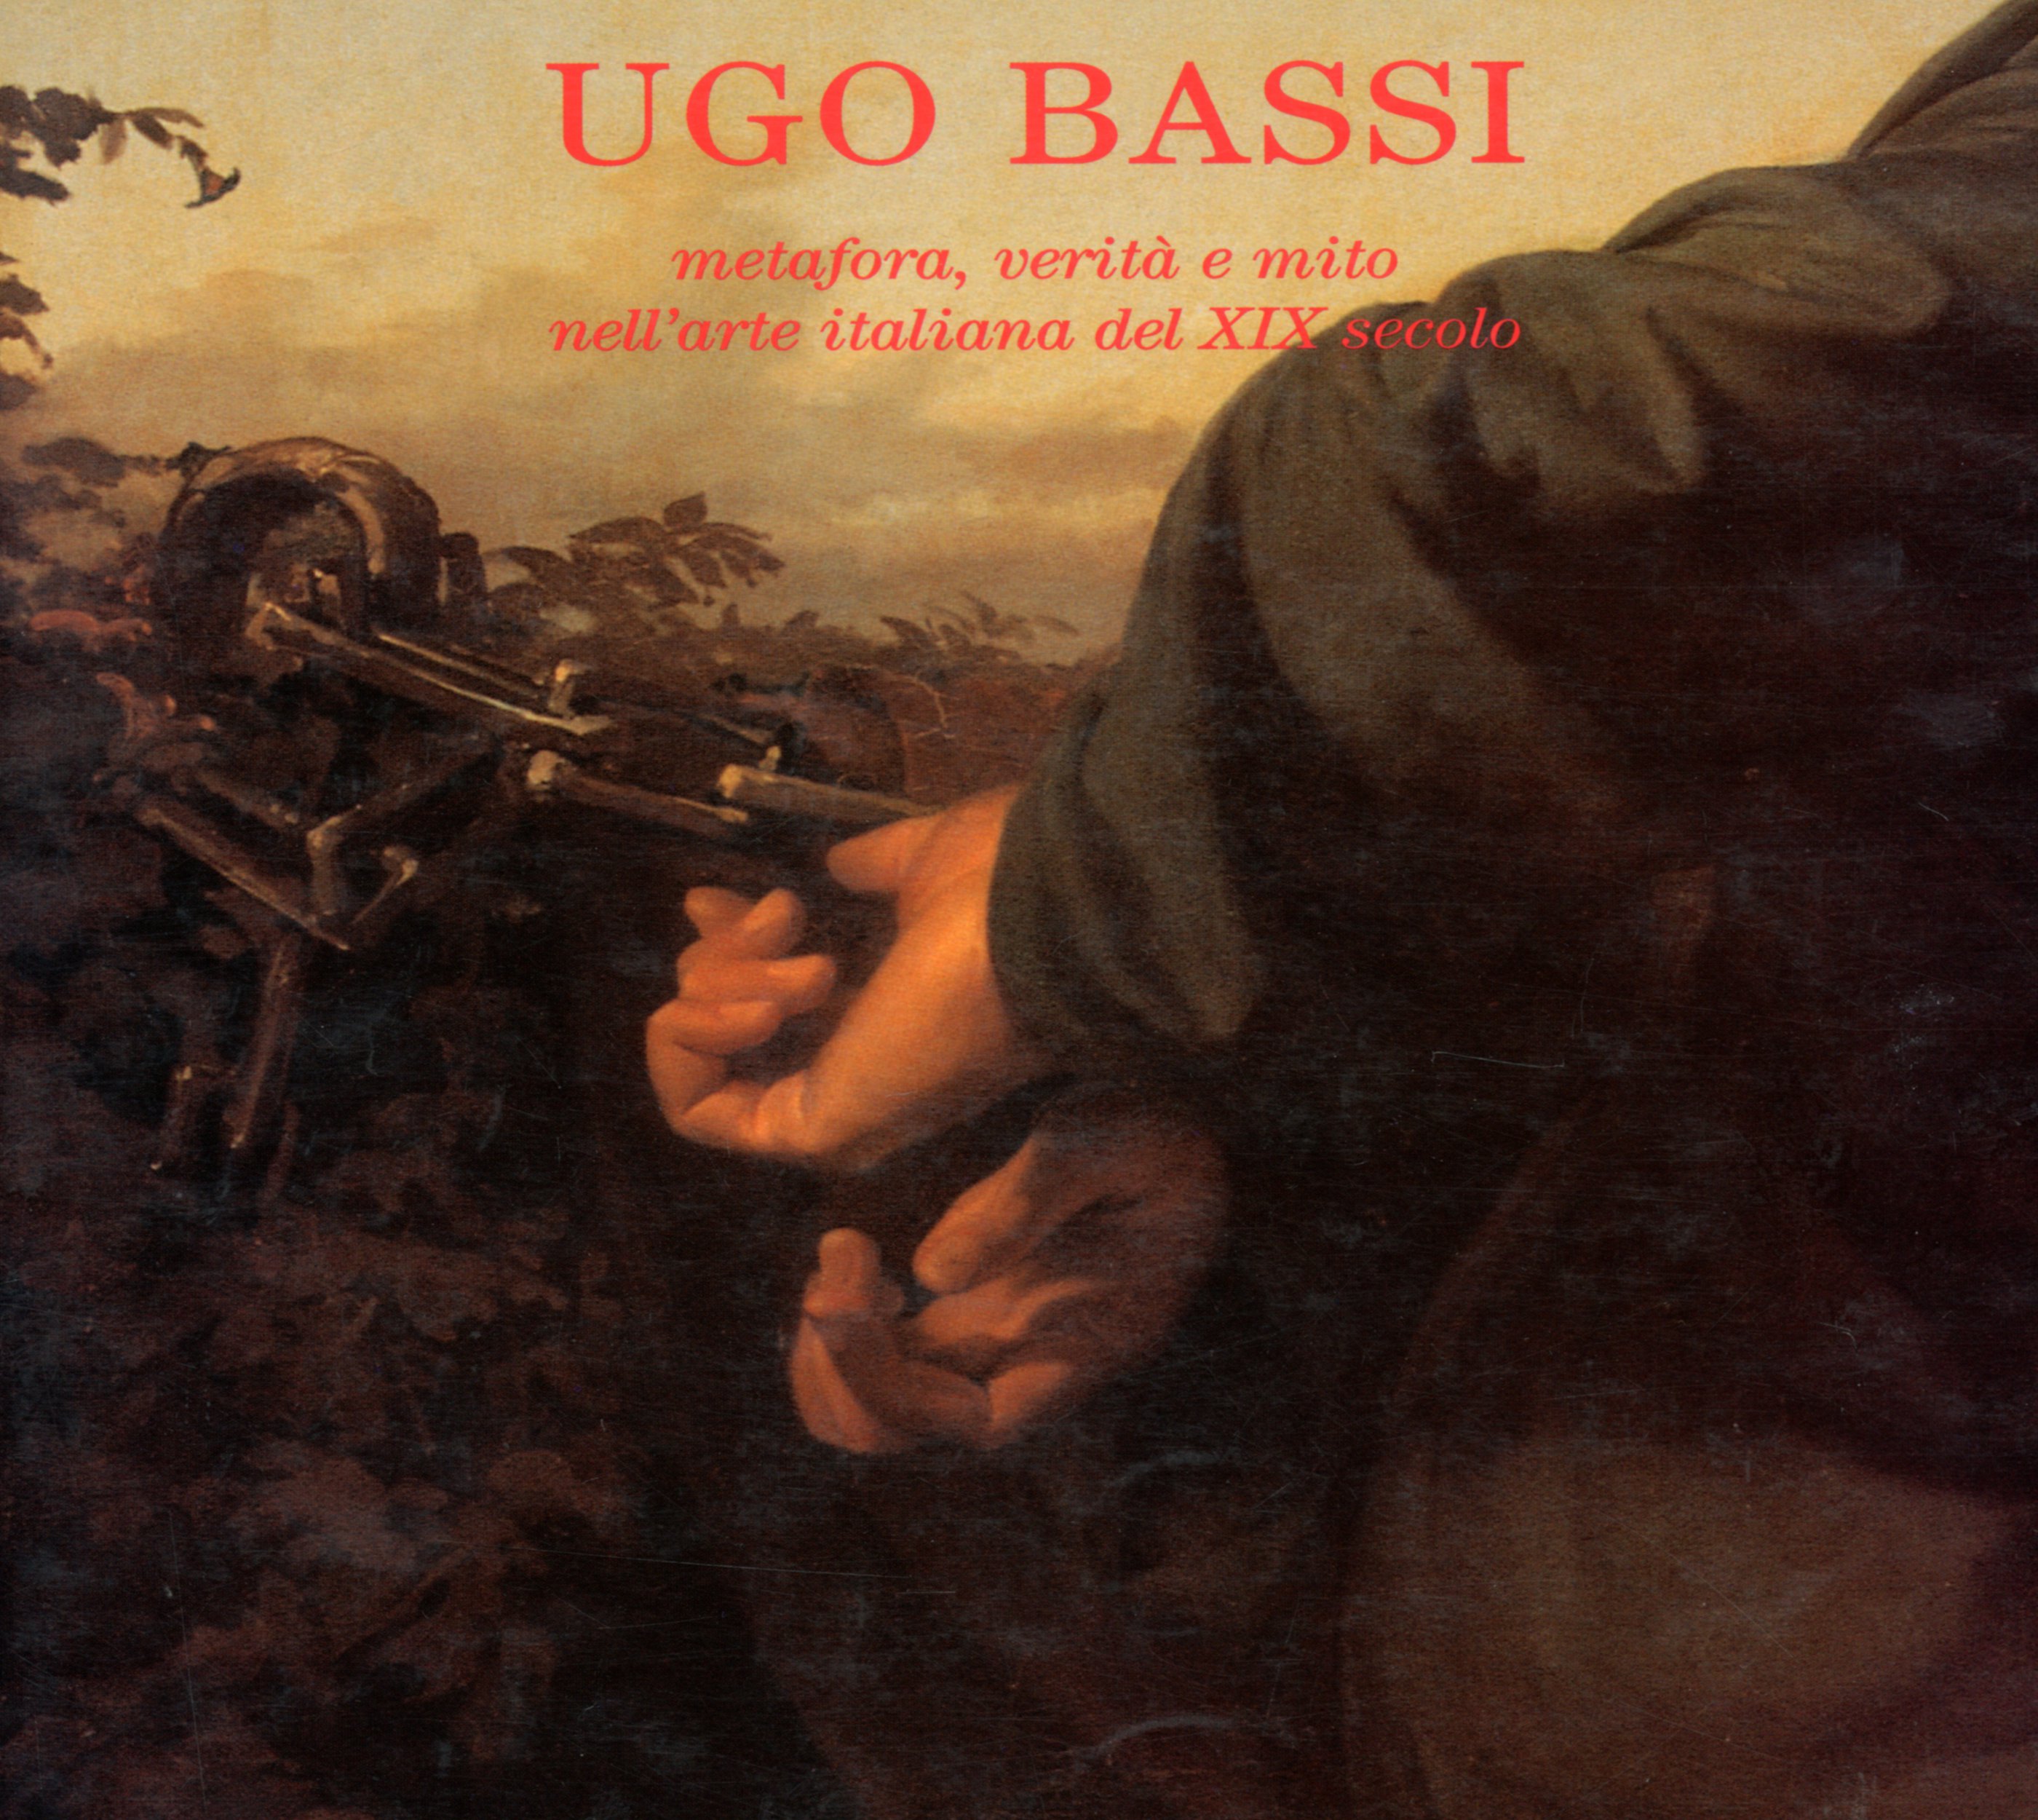 Ugo Bassi: metafora, verità e mito nell' arte italiana del XIX secoloUltima